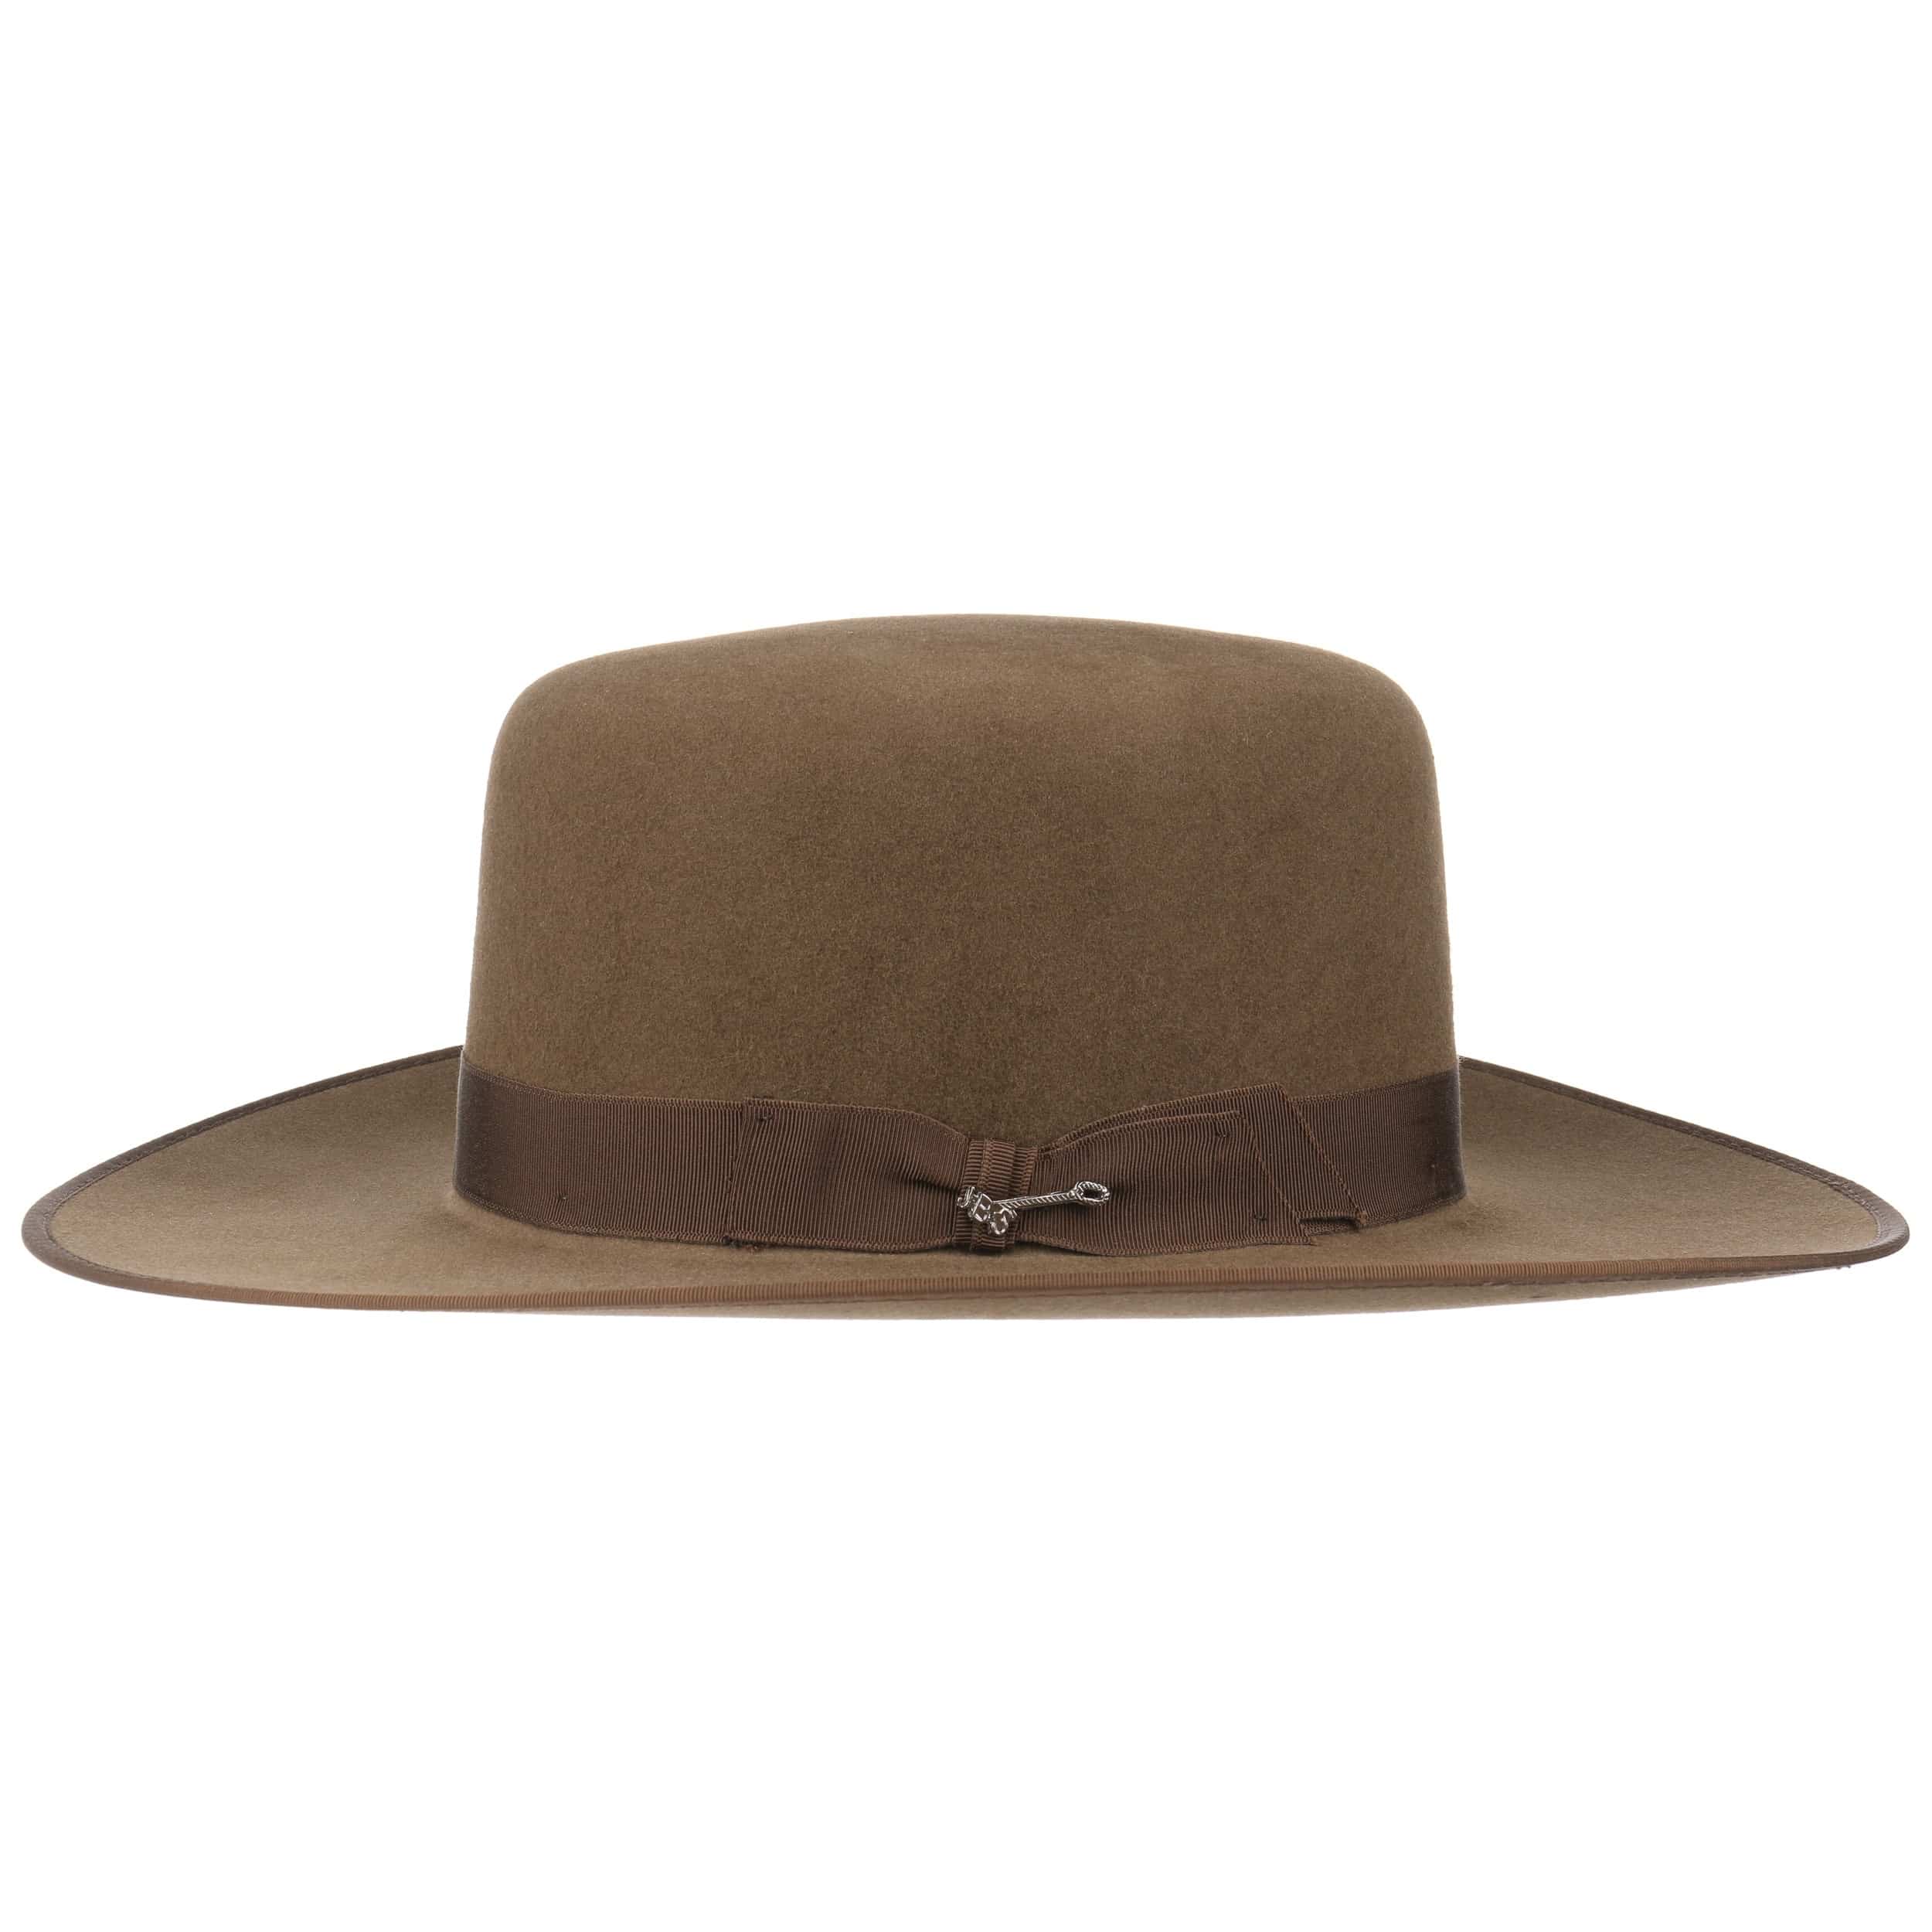 Austral 4X Old West Fur Felt Hat by Stetson, EUR 349,00 --> Hats, caps ...